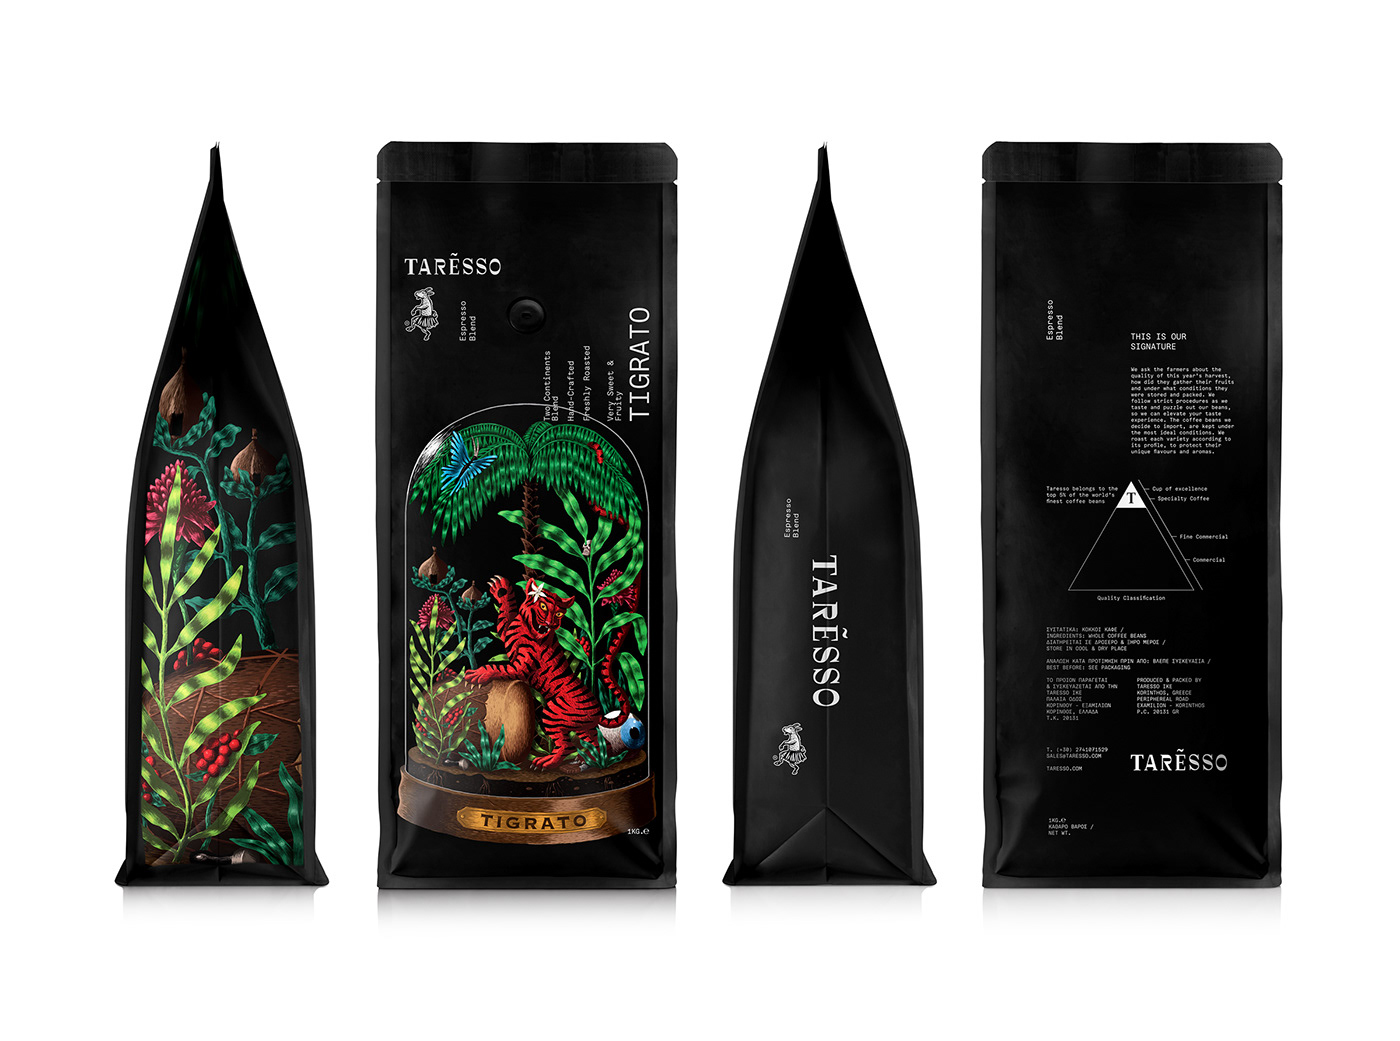 Taresso Tigrato supremo Coffee blend ILLUSTRATION 